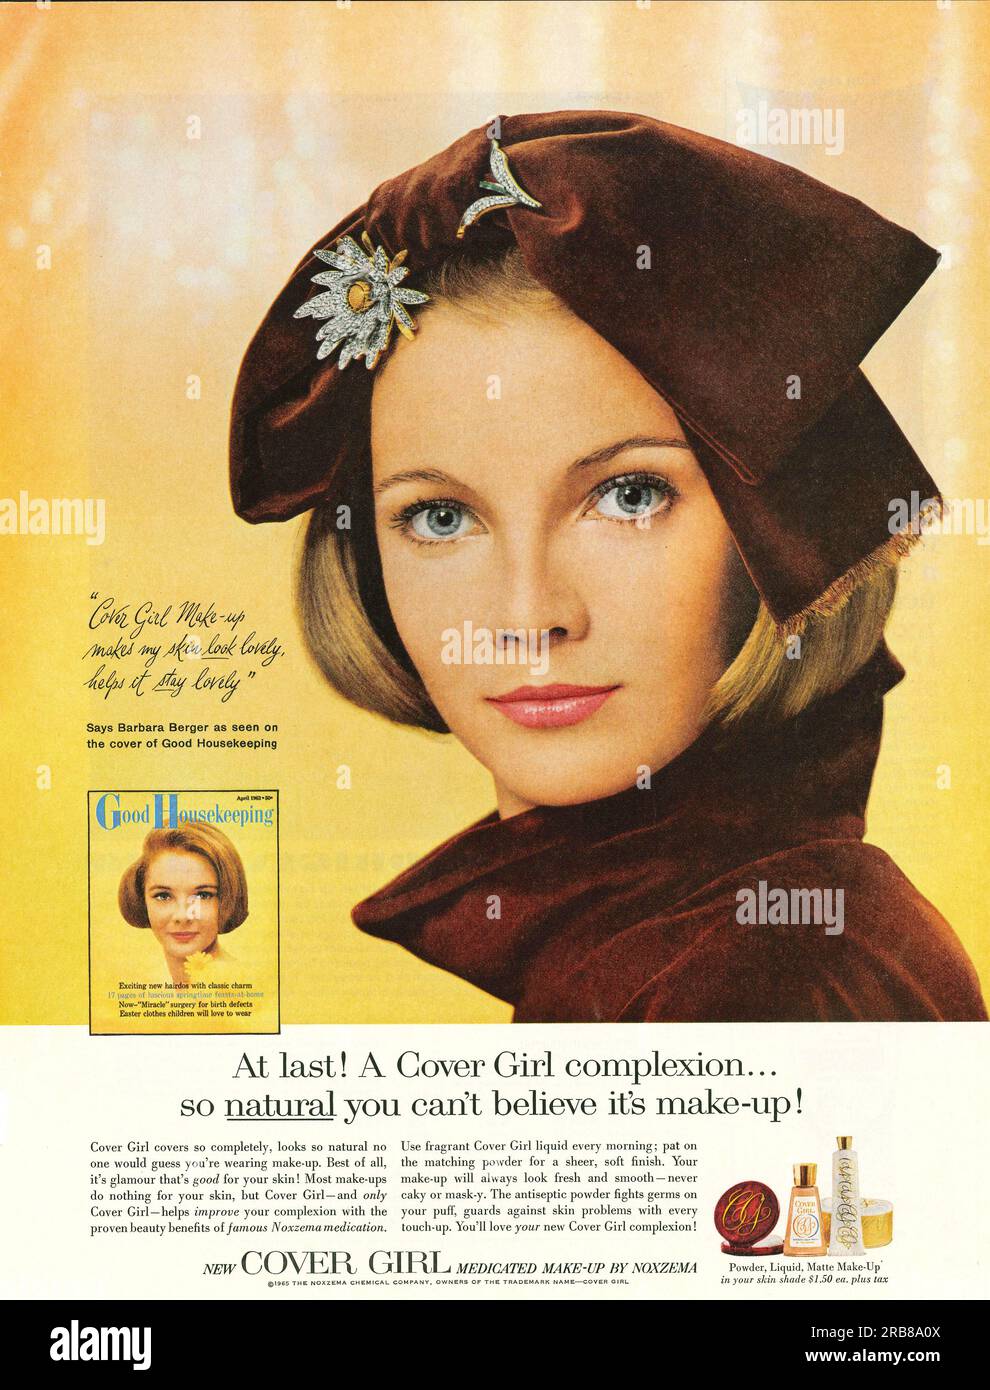 Covergirl Makeup di Noxzema pubblicità in una rivista Journal, 1965 Foto Stock